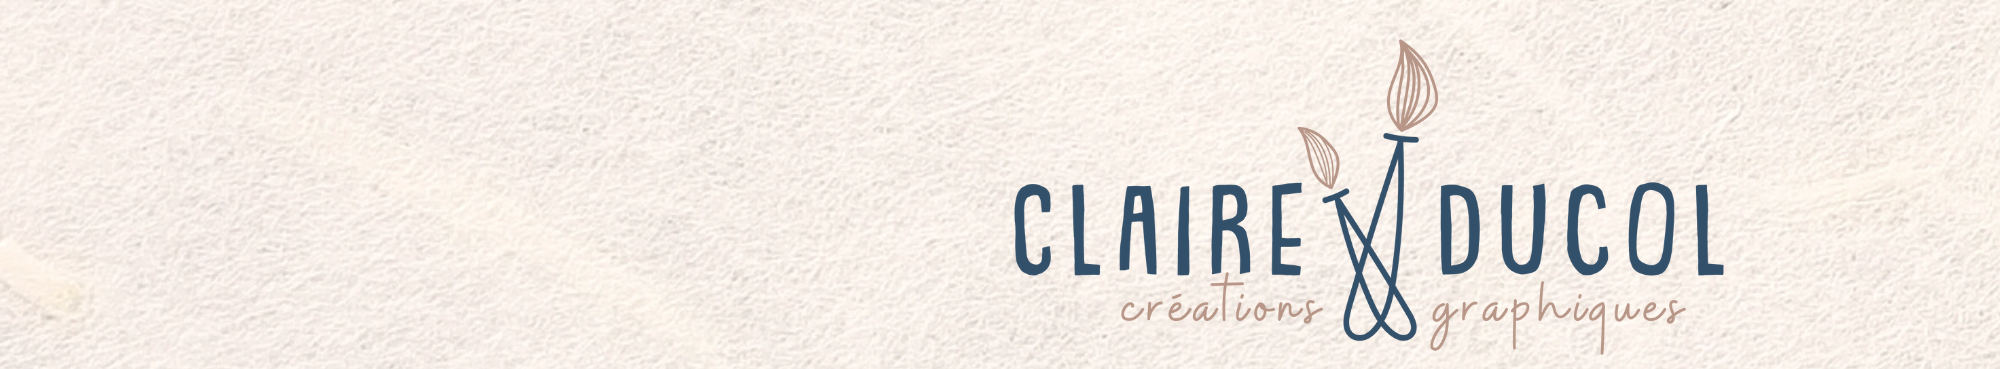 CLAIRE DUCOL's profile banner